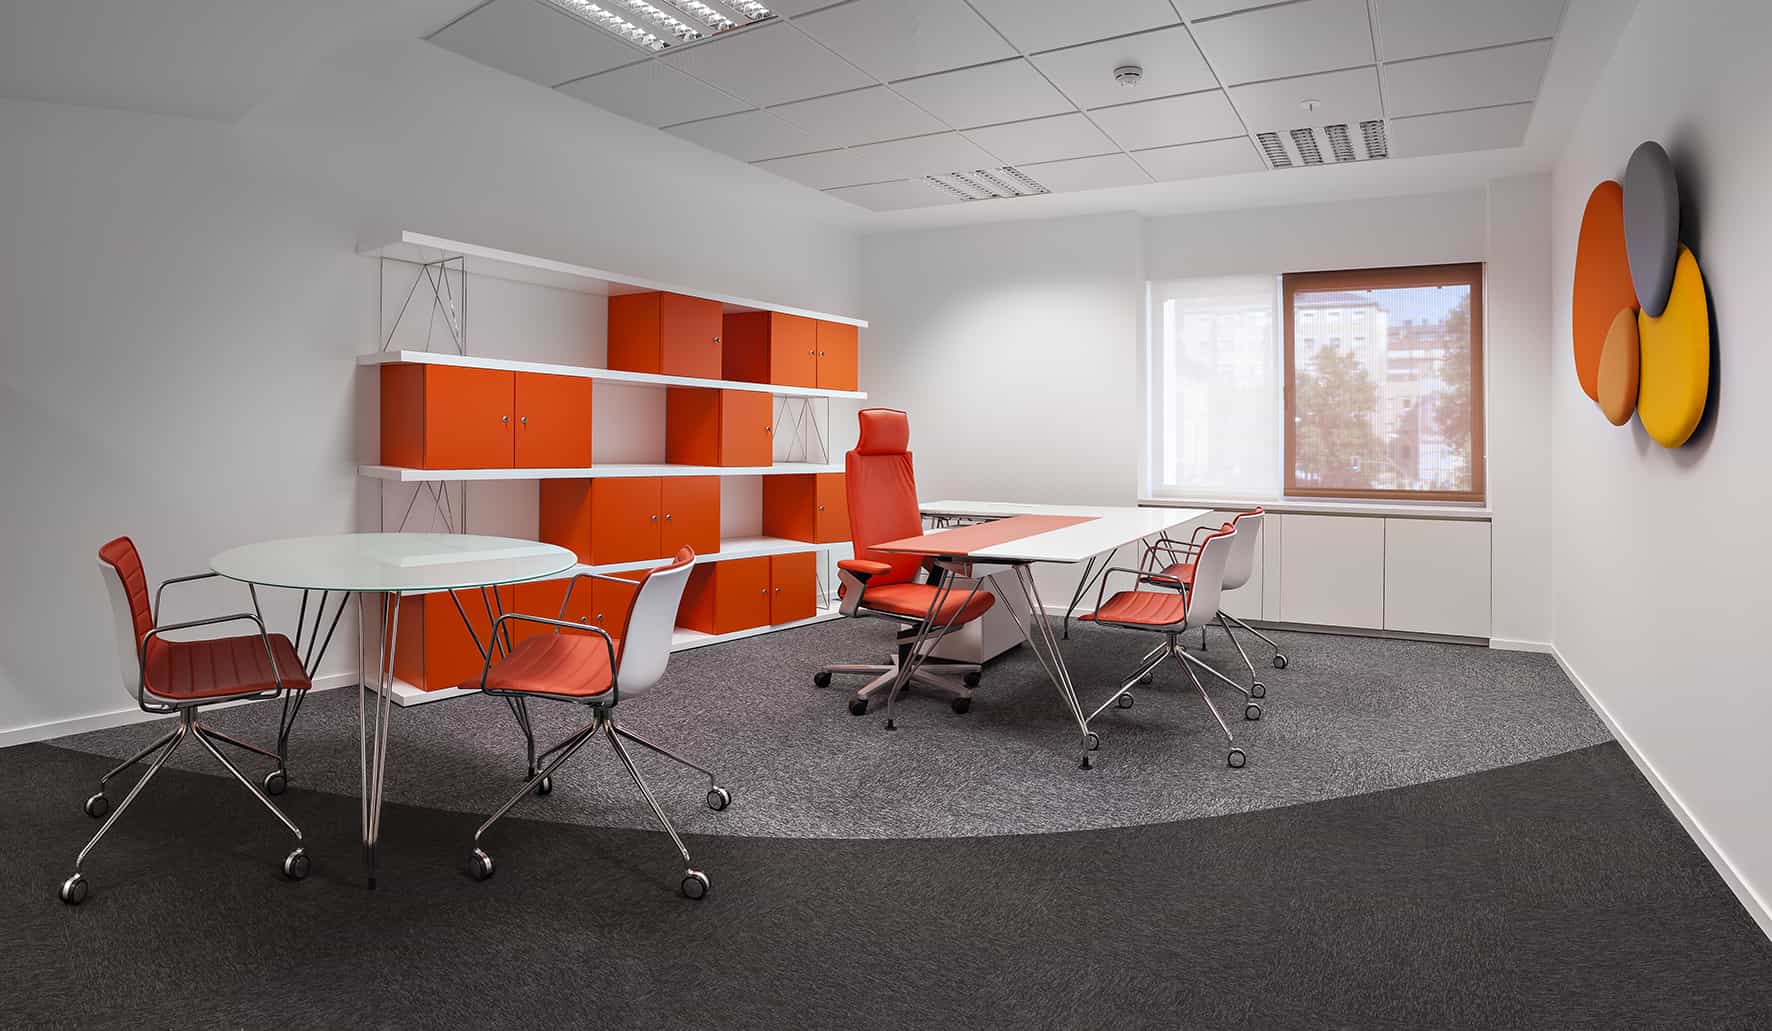 Philip Morris_Galería_despacho individual de color naranja con espacio de almacenaje y mobiliario de oficina